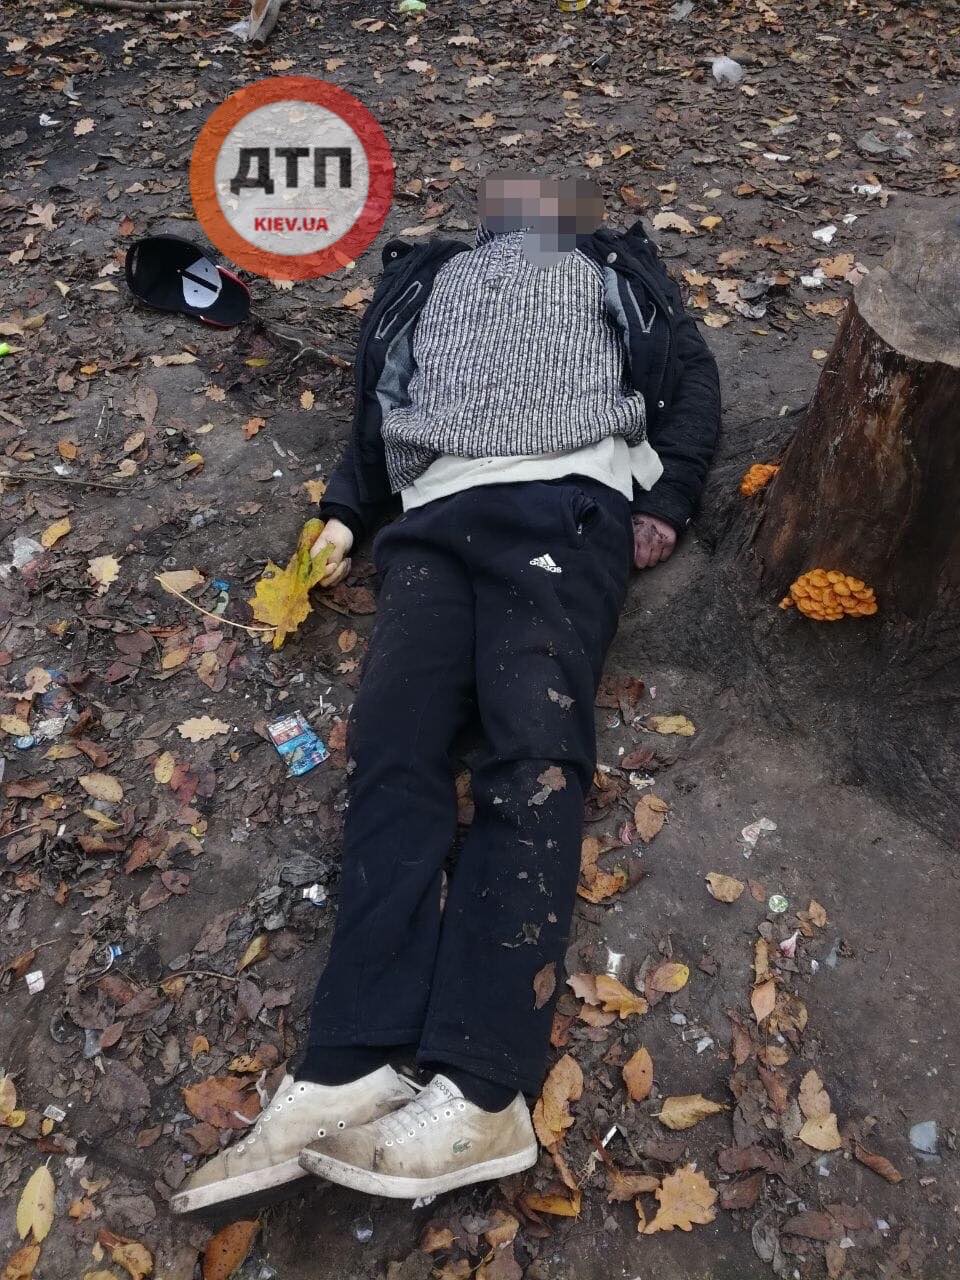 Под Киевом в посадке нашли труп: полиция просит помощи в опознании мужчины